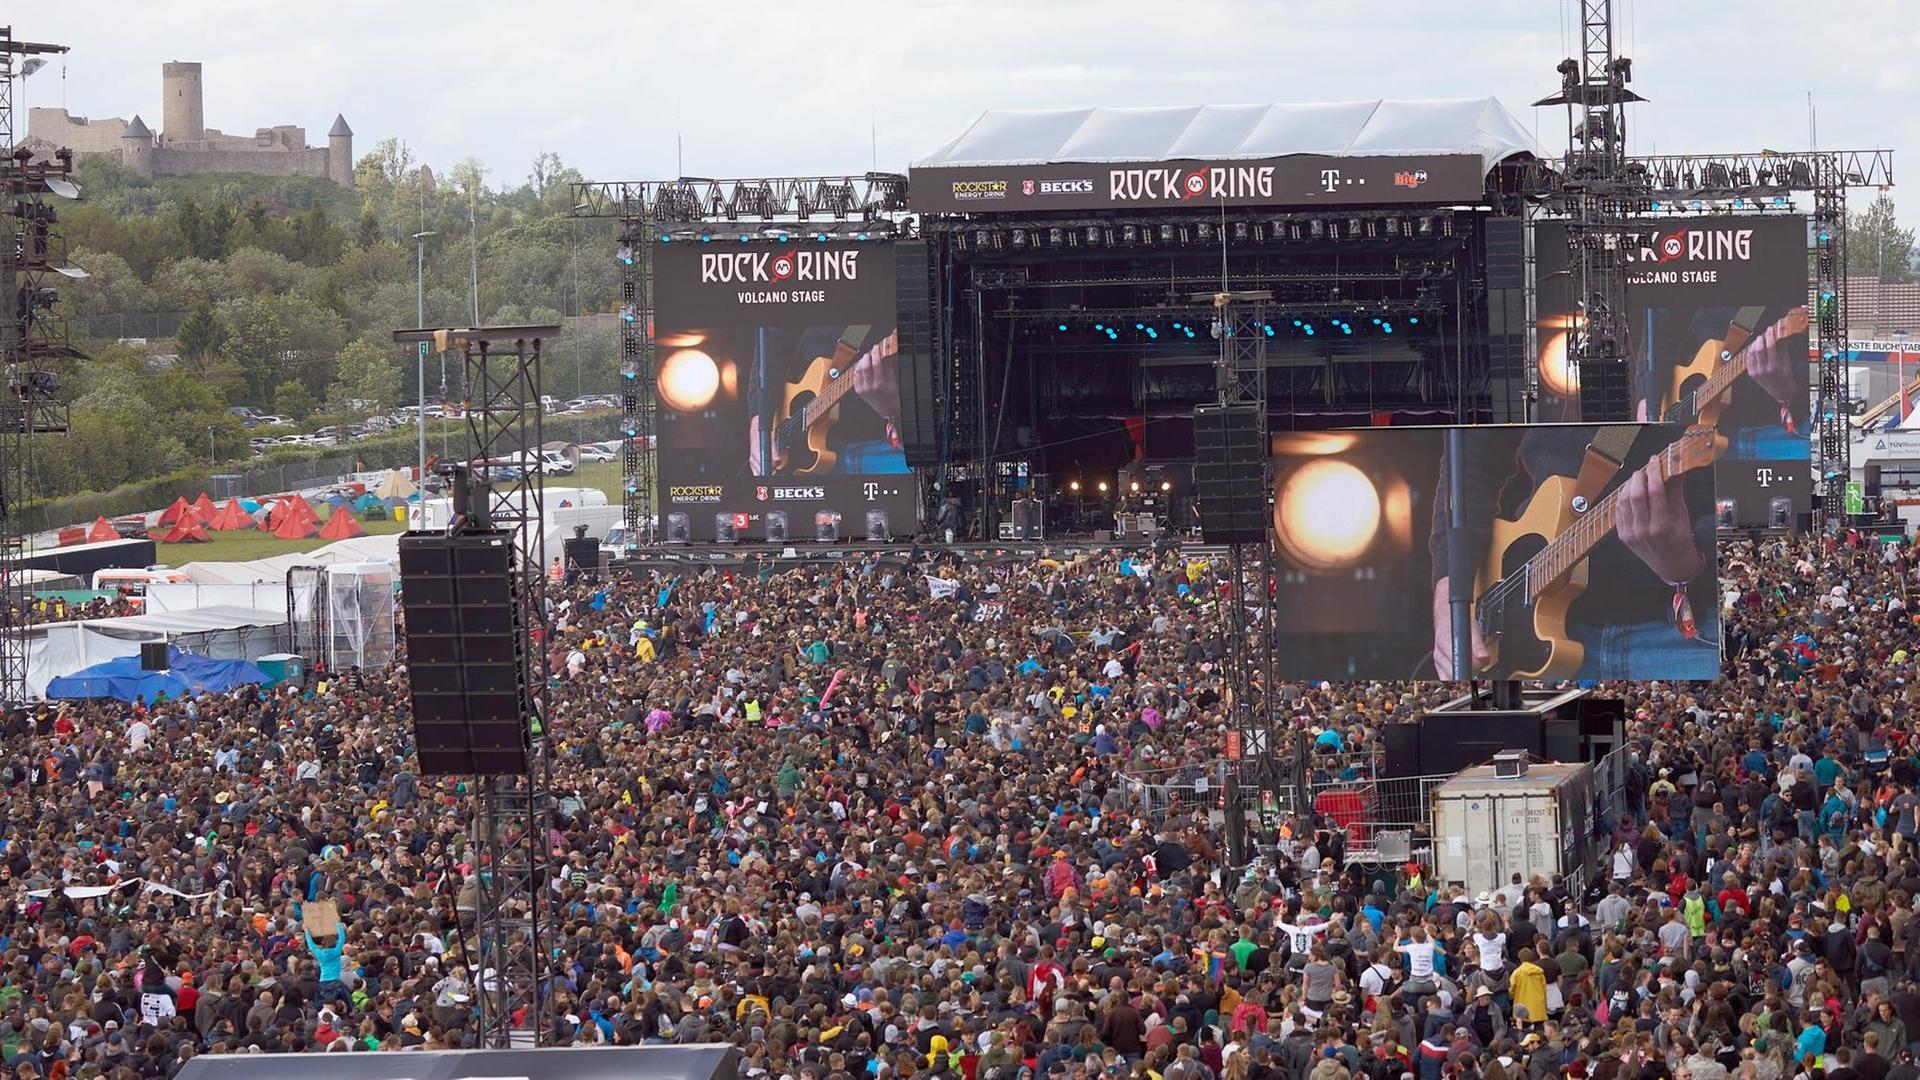 Musik-Fans während eines Konzerts vor der Bühne von dem Festival "Rock am Ring" im Jahr 2019.